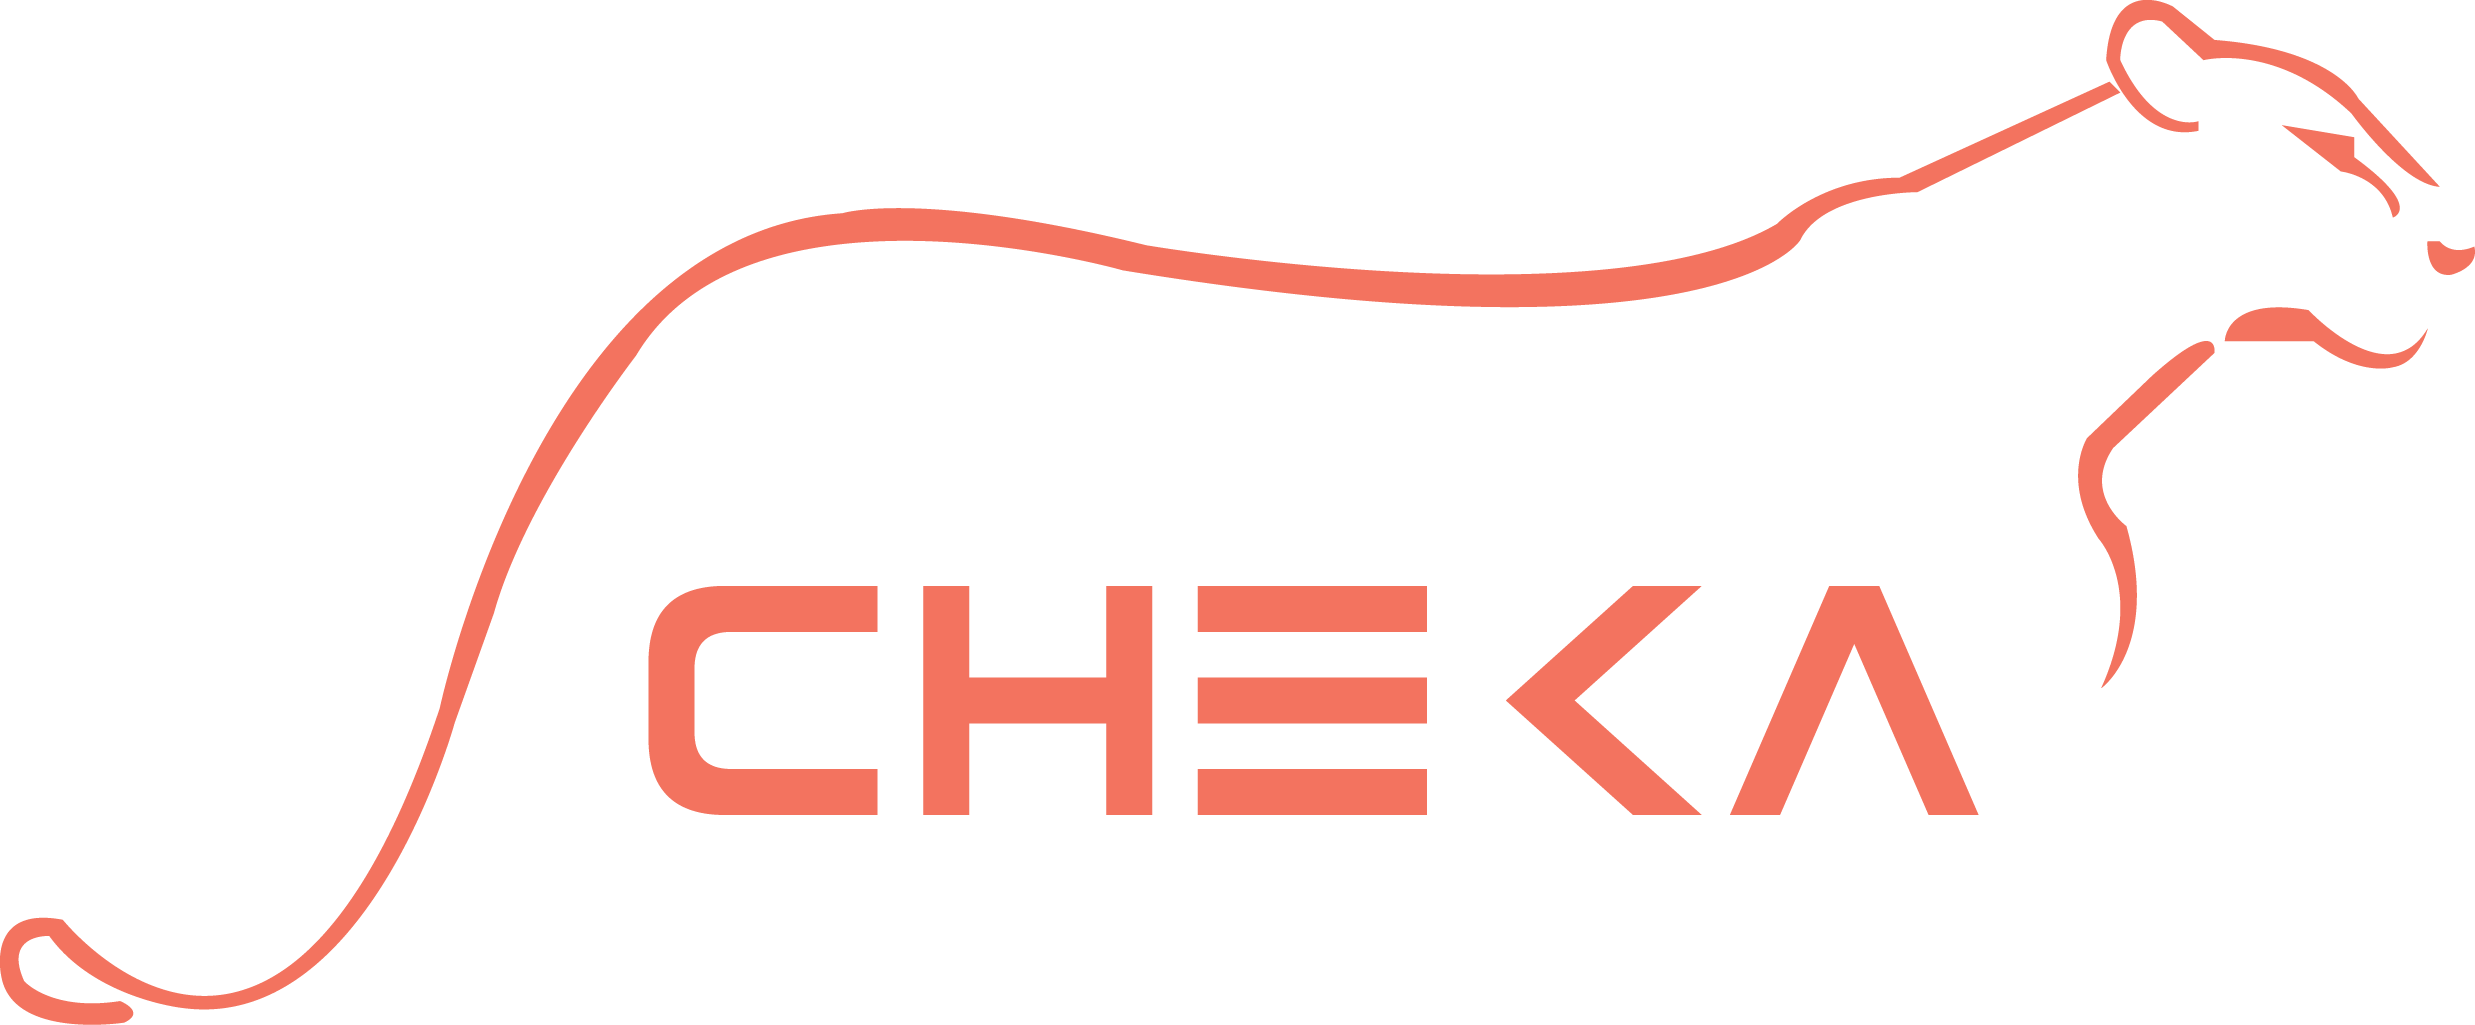 Cheka